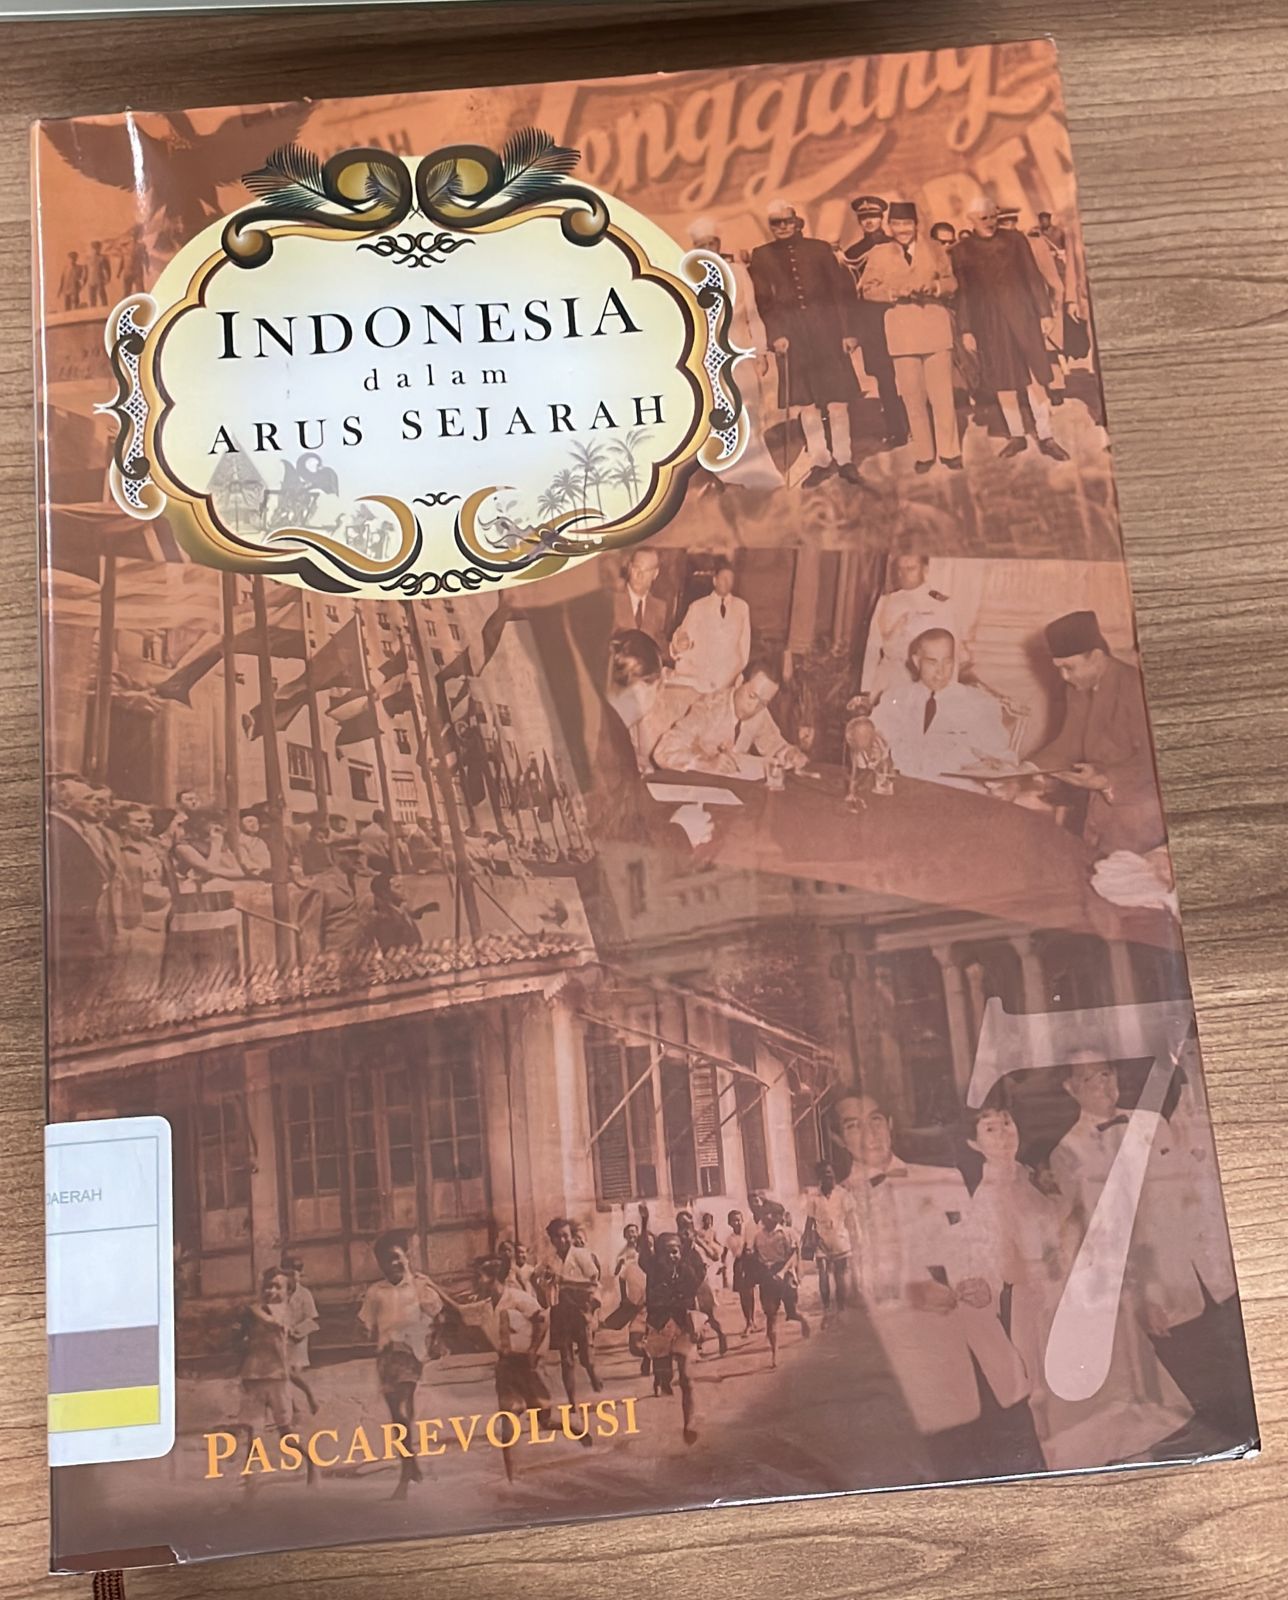 Indonesia Dalam Arus Sejarah 7 :  Pascarevolusi